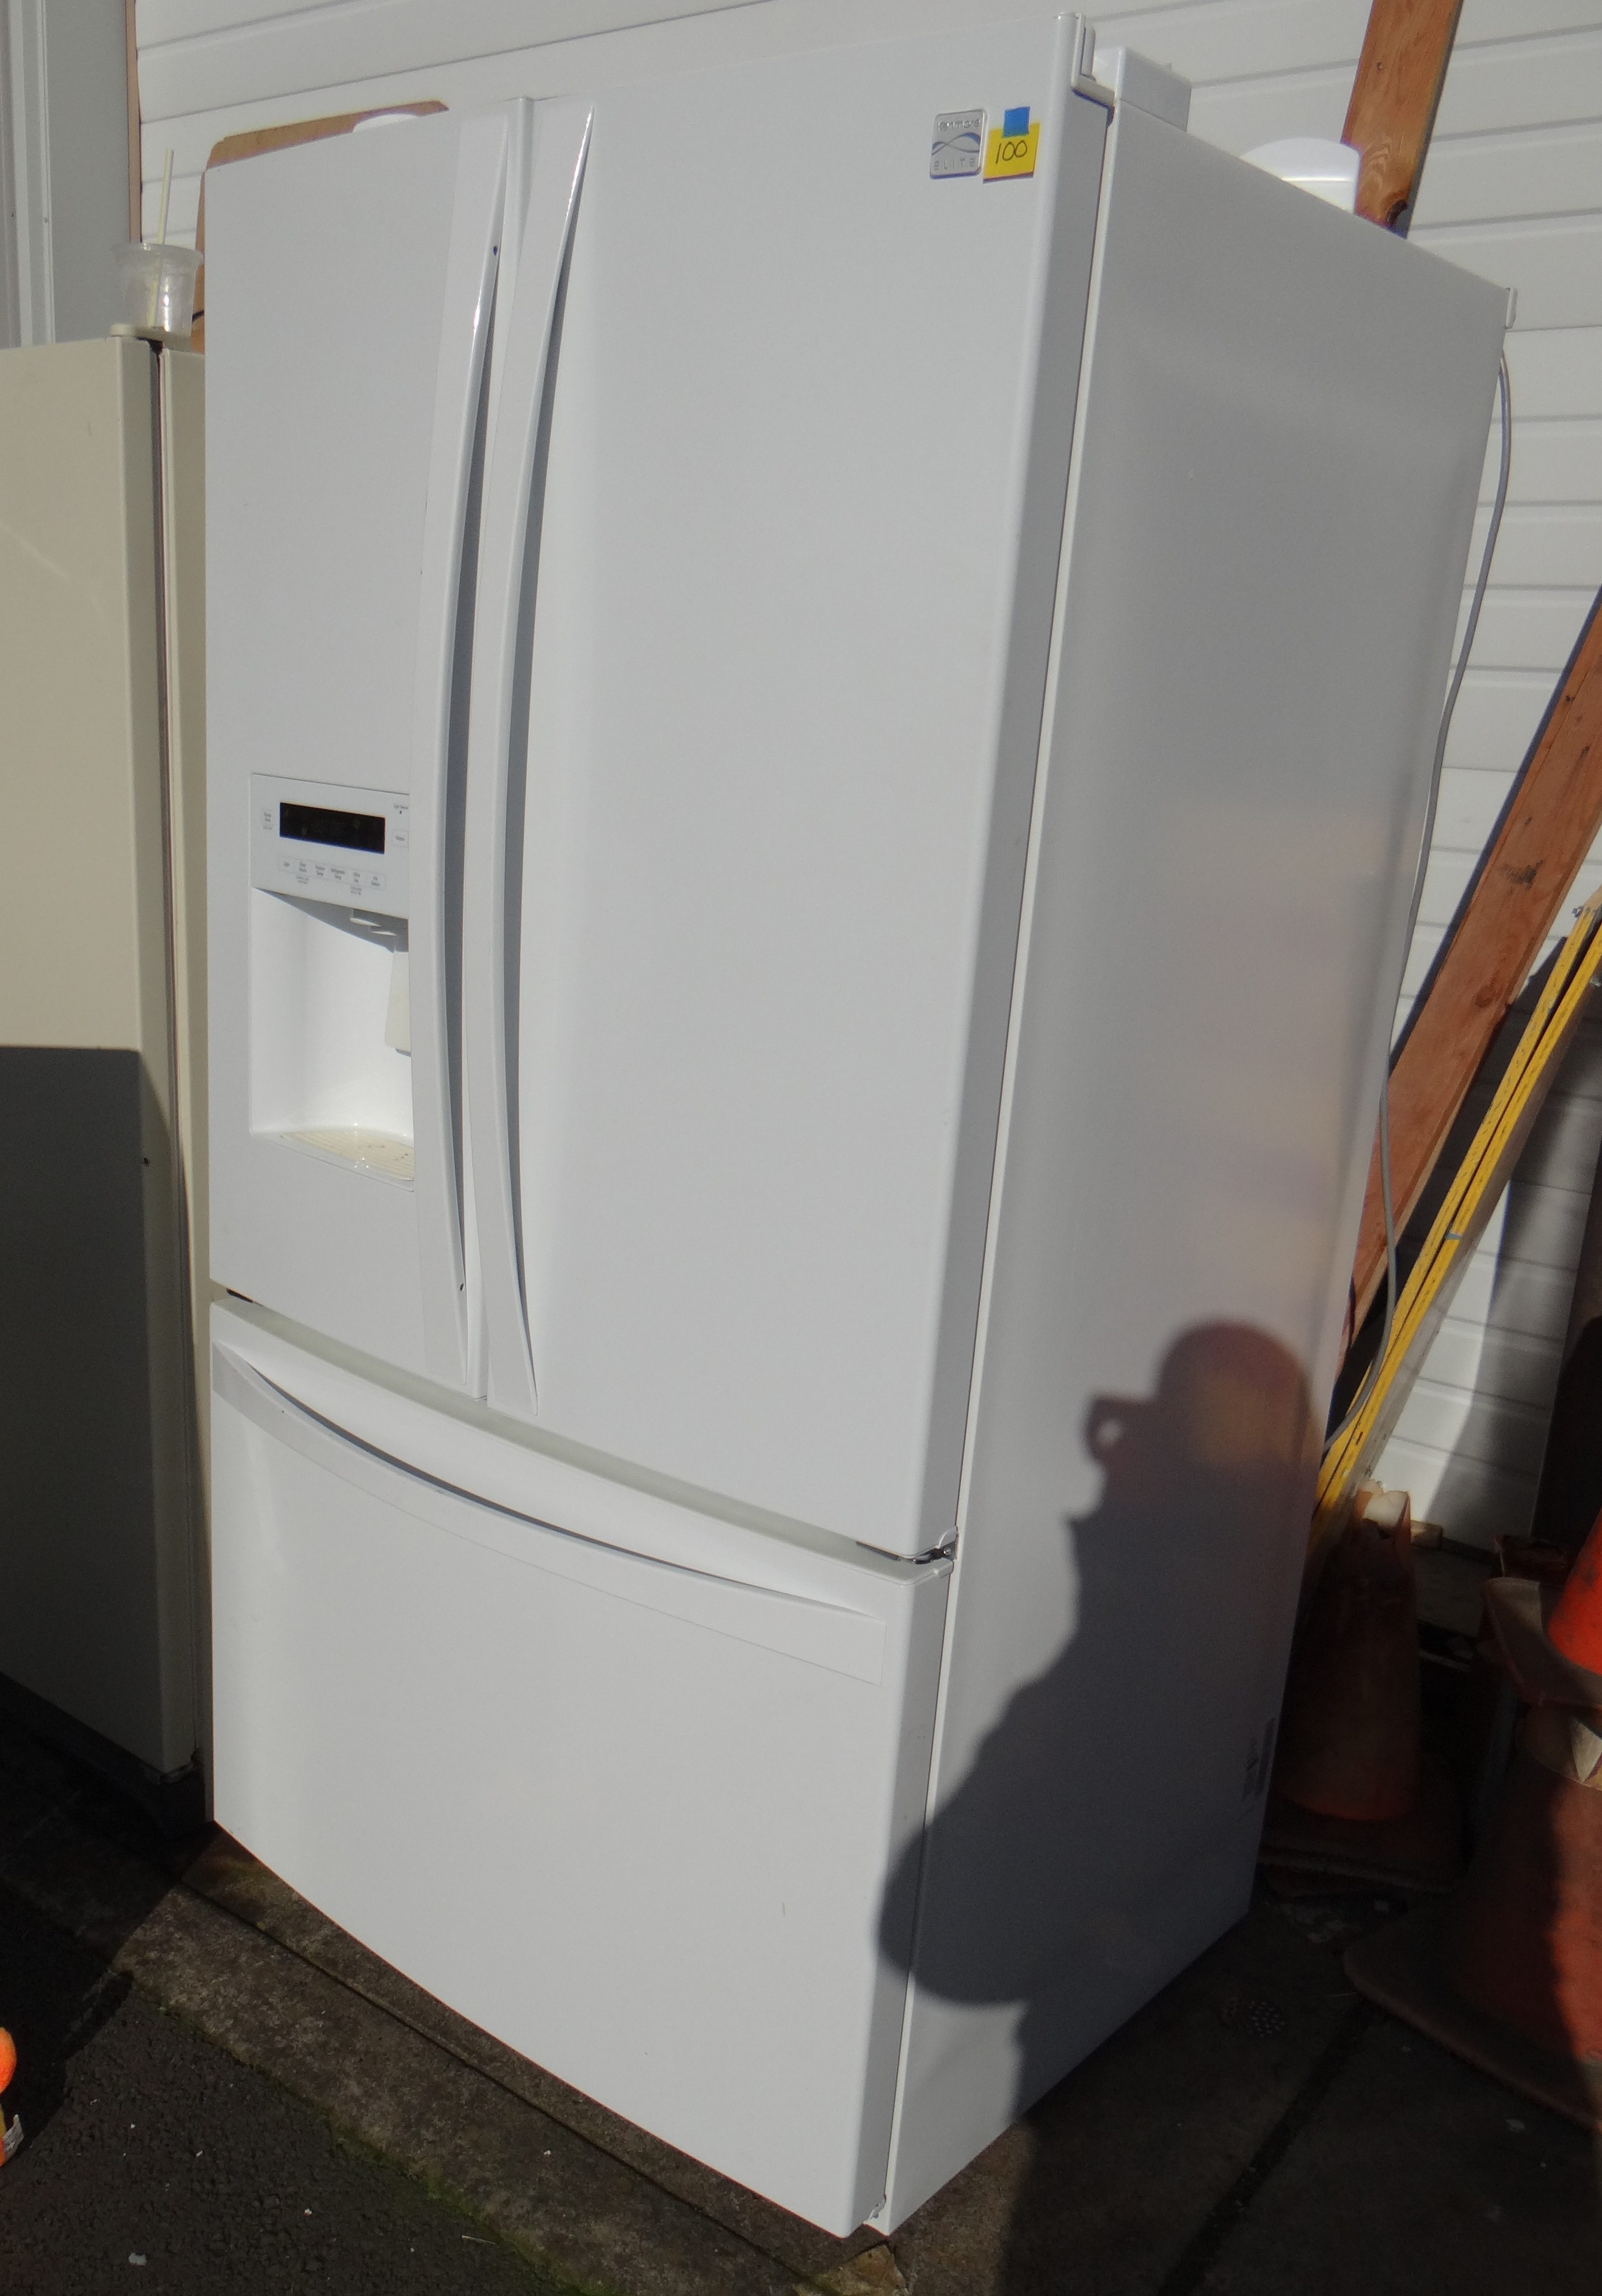 OO100-Kenmore Elite Refrigerator Model No. 795.71052.010